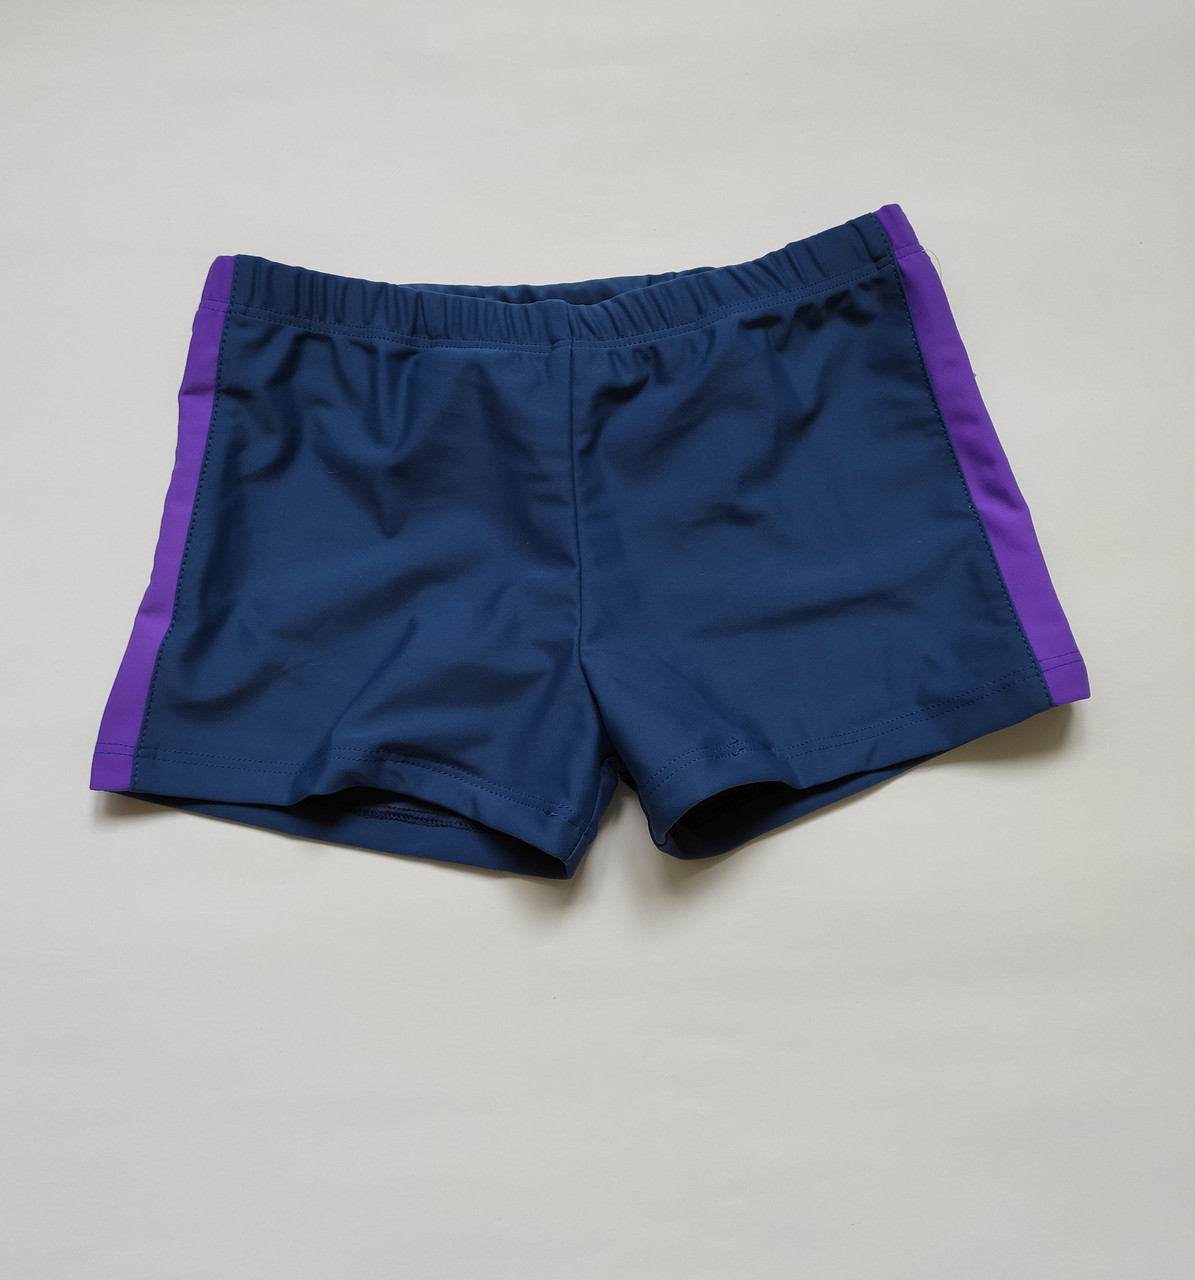 Детские плавки шорты для мальчика цвет темно-синий + фиолет Бедра 66-90 см